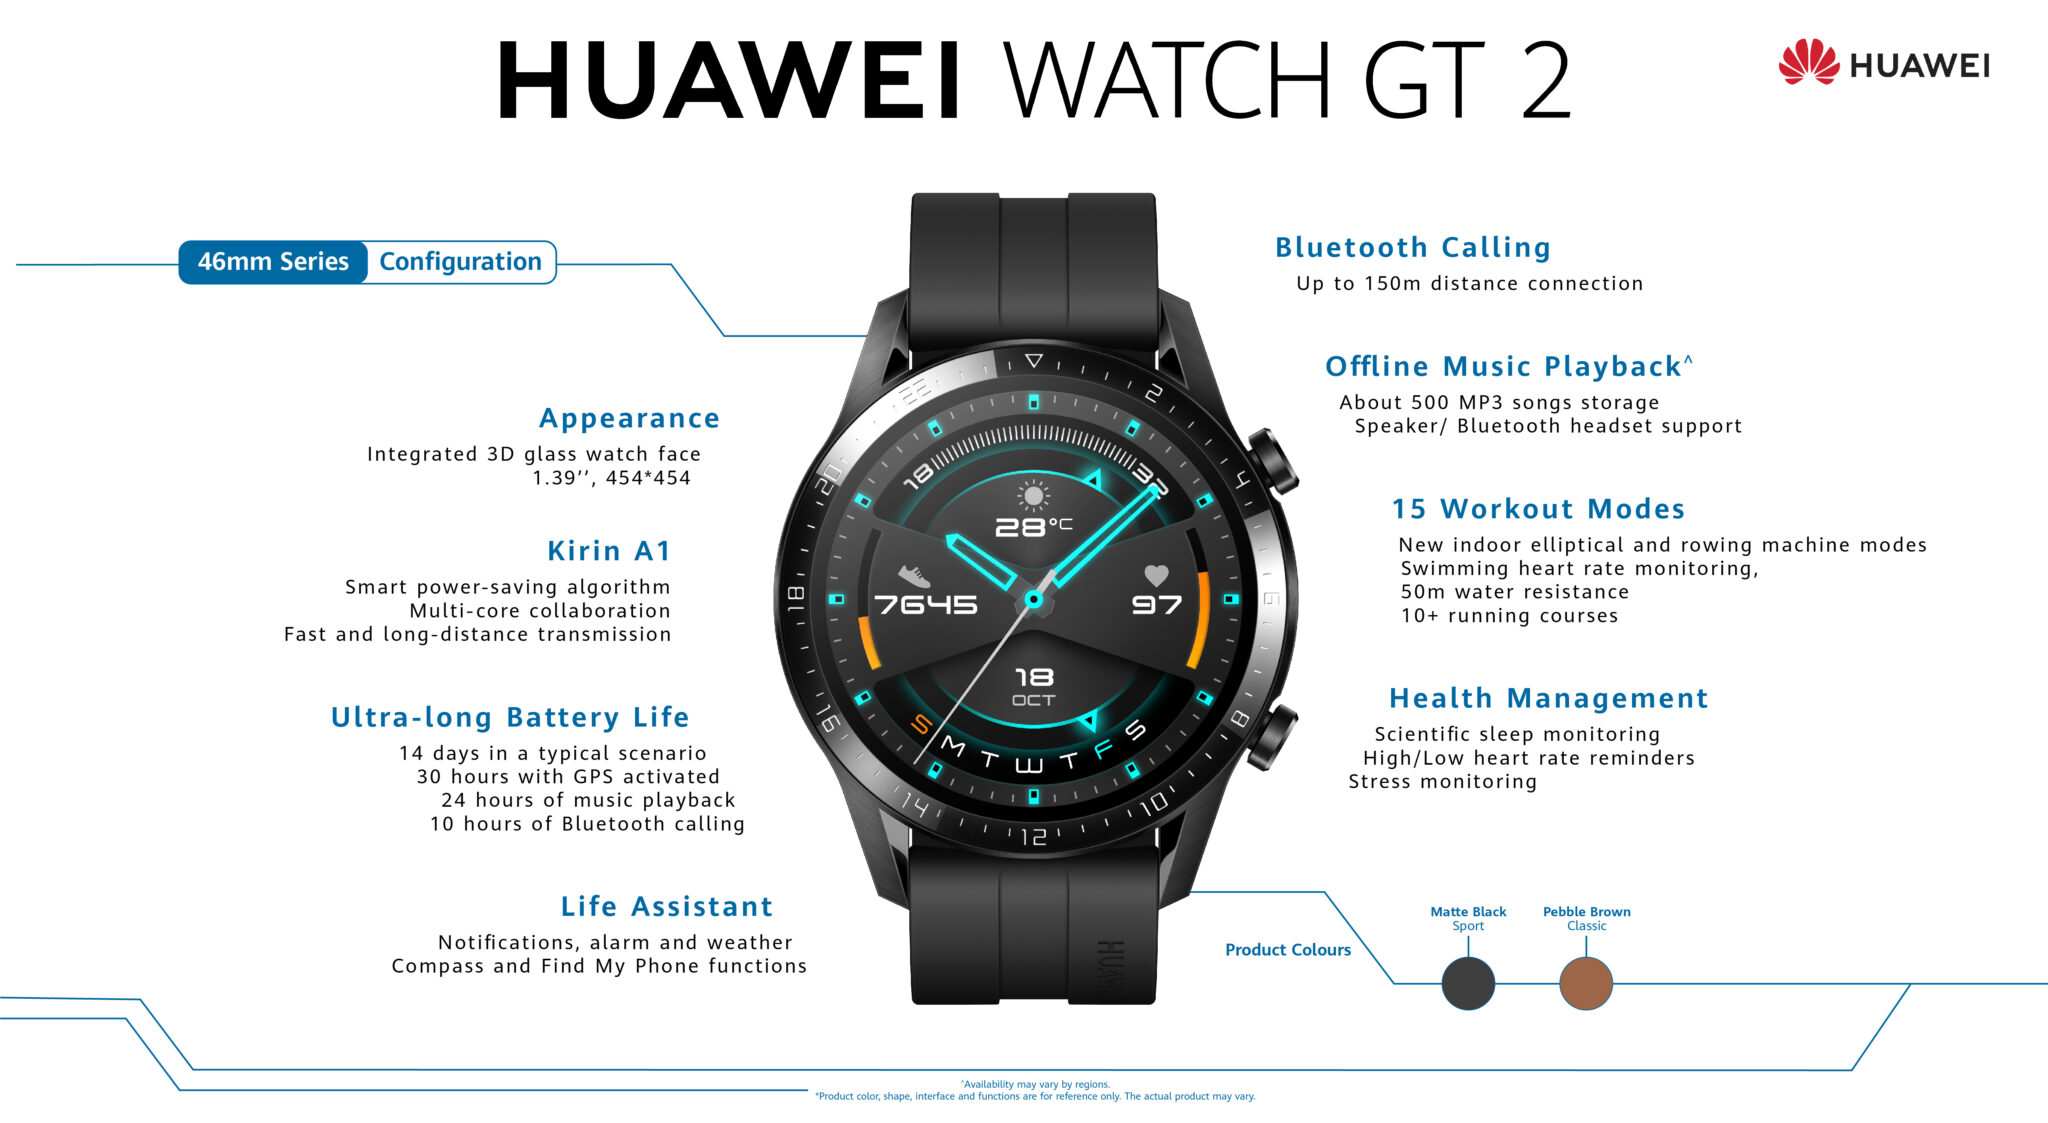 Huawei Watch GT2 specs